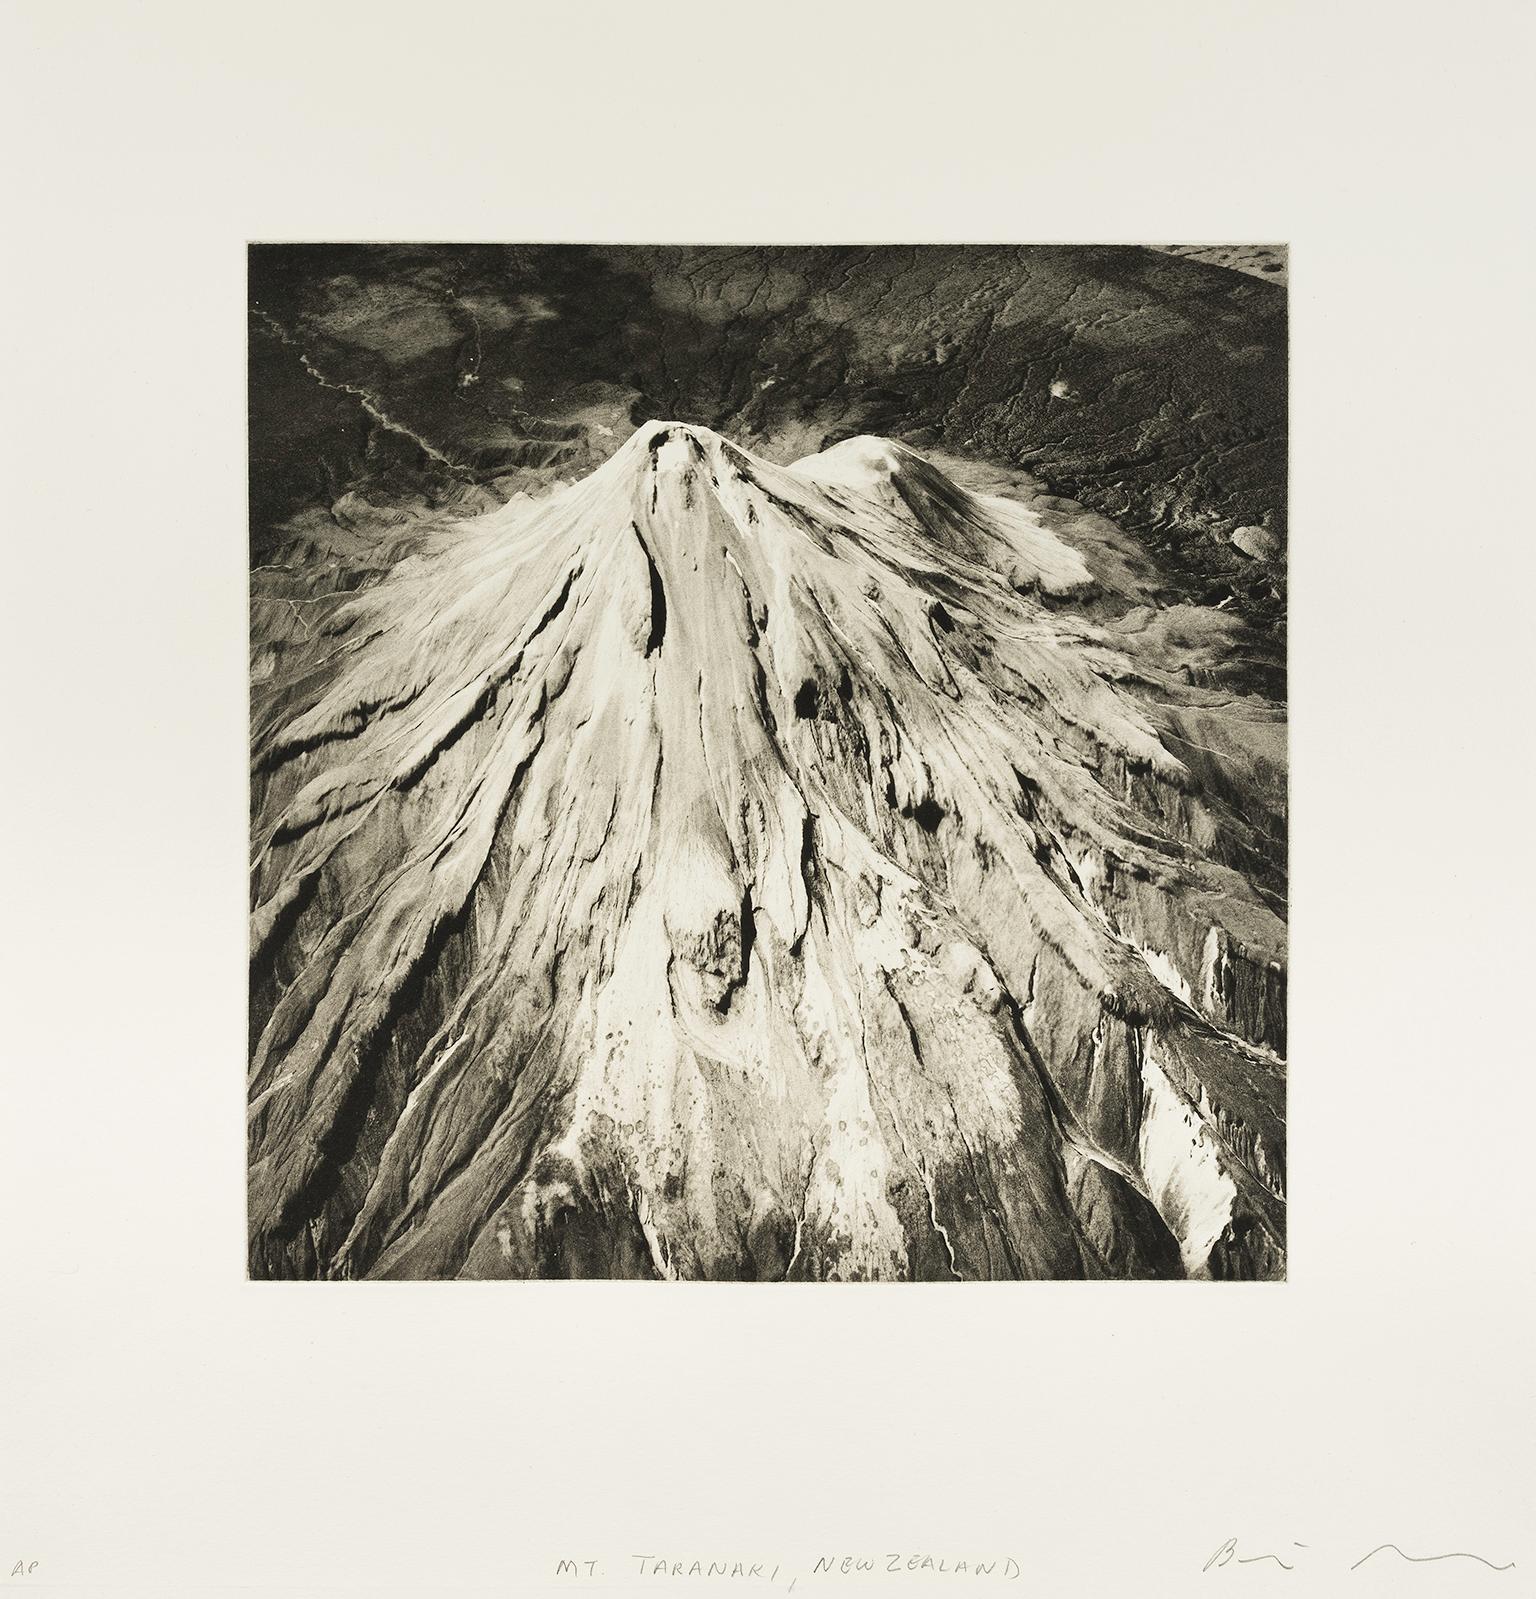 'Mount Taranaki, New Zealand' — from the series 'Axis Mundi', Contemporary